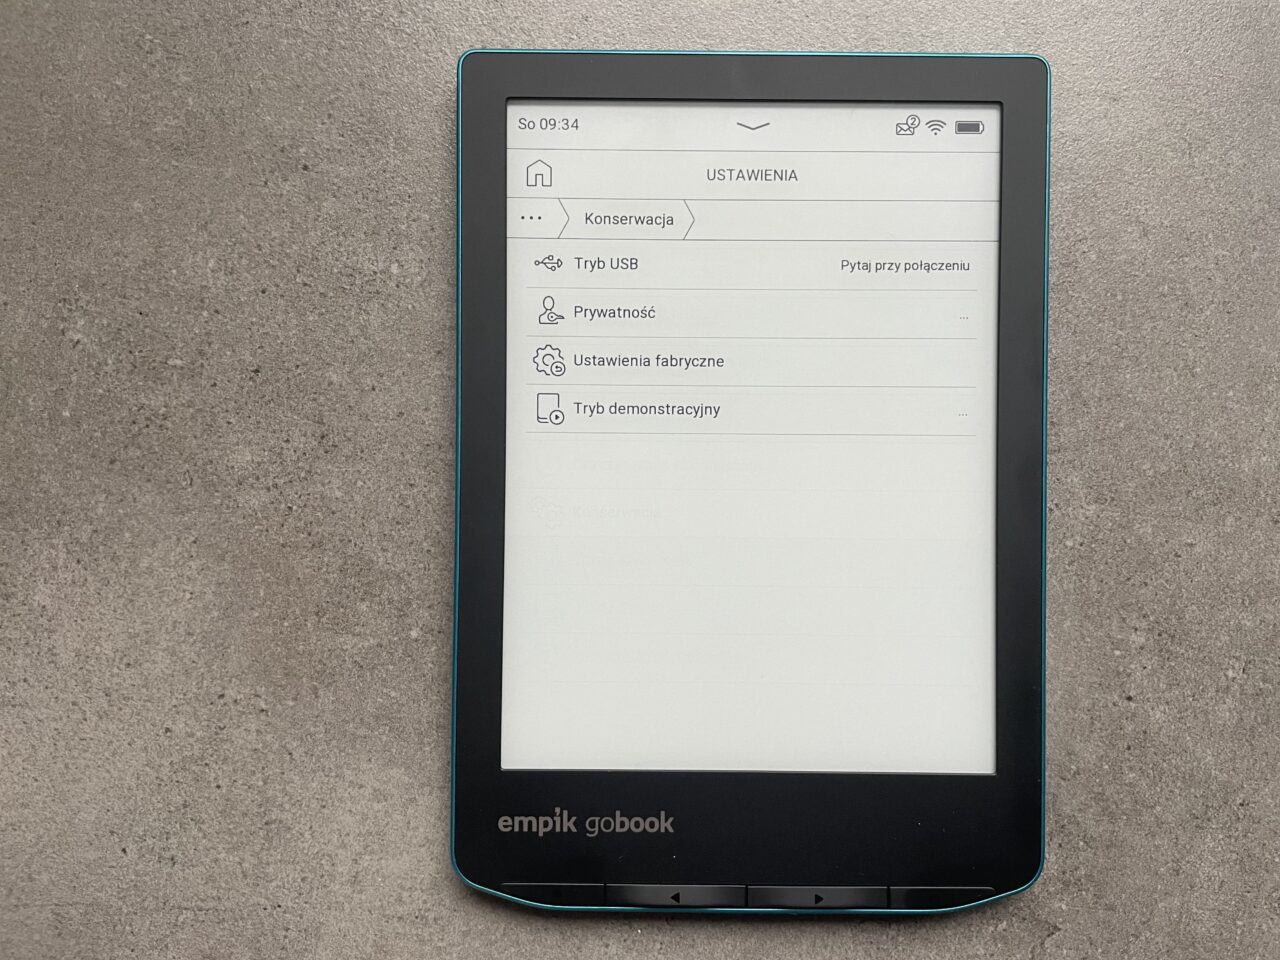 Czytnik e-booków Empik GoBook na szarym tle, wyświetlający menu ustawień z opcjami takimi jak konservacja, tryb USB, prywatność czy ustawienia fabryczne.